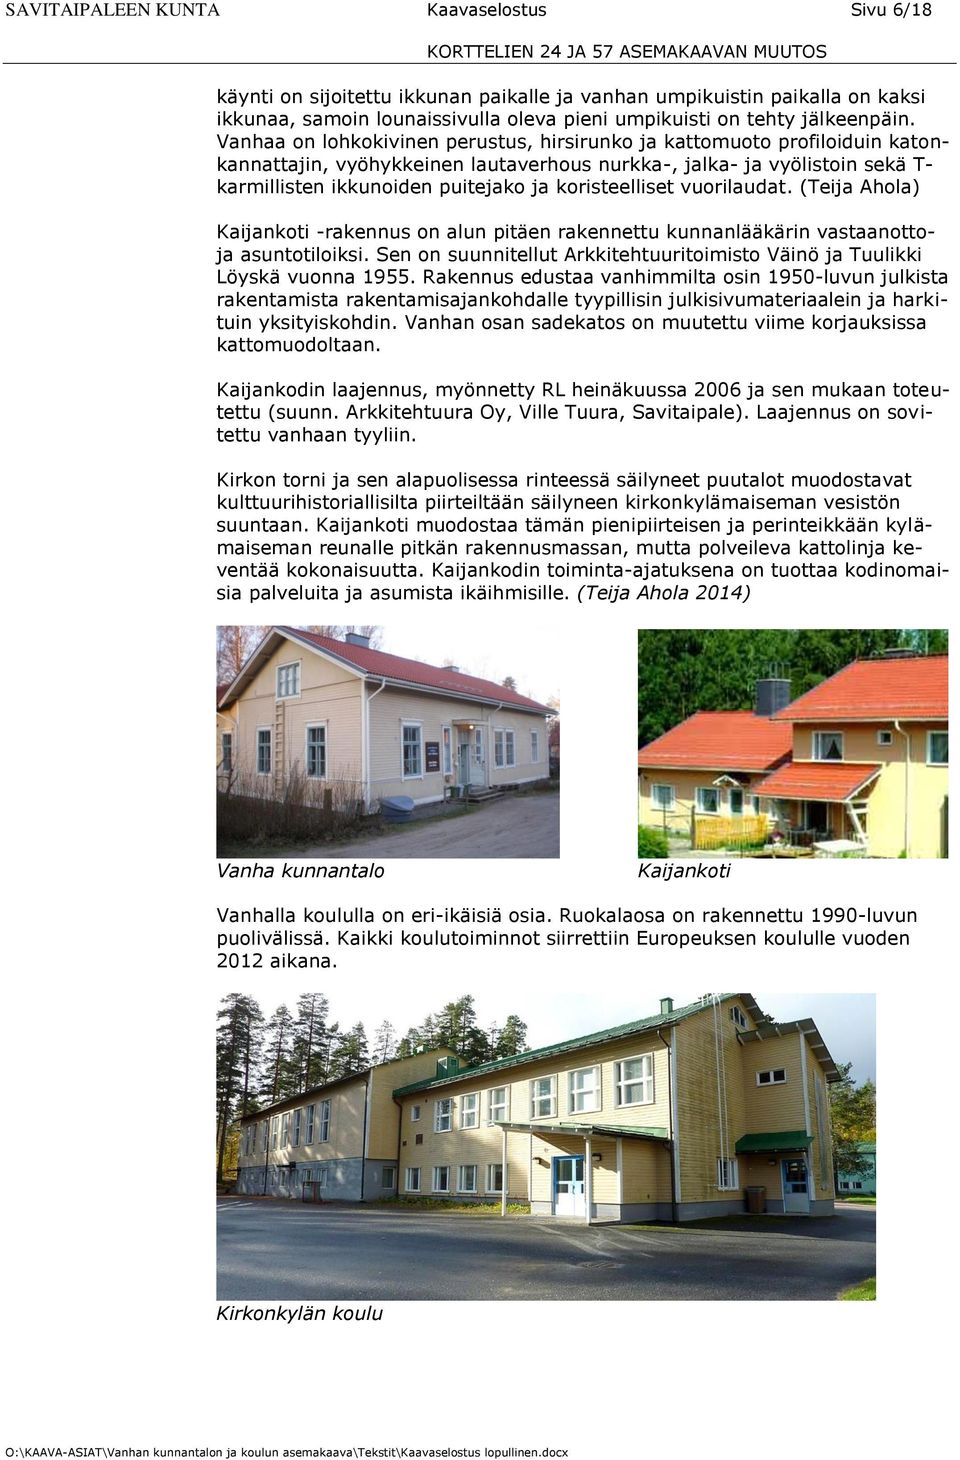 koristeelliset vuorilaudat. (Teija Ahola) Kaijankoti -rakennus on alun pitäen rakennettu kunnanlääkärin vastaanottoja asuntotiloiksi.